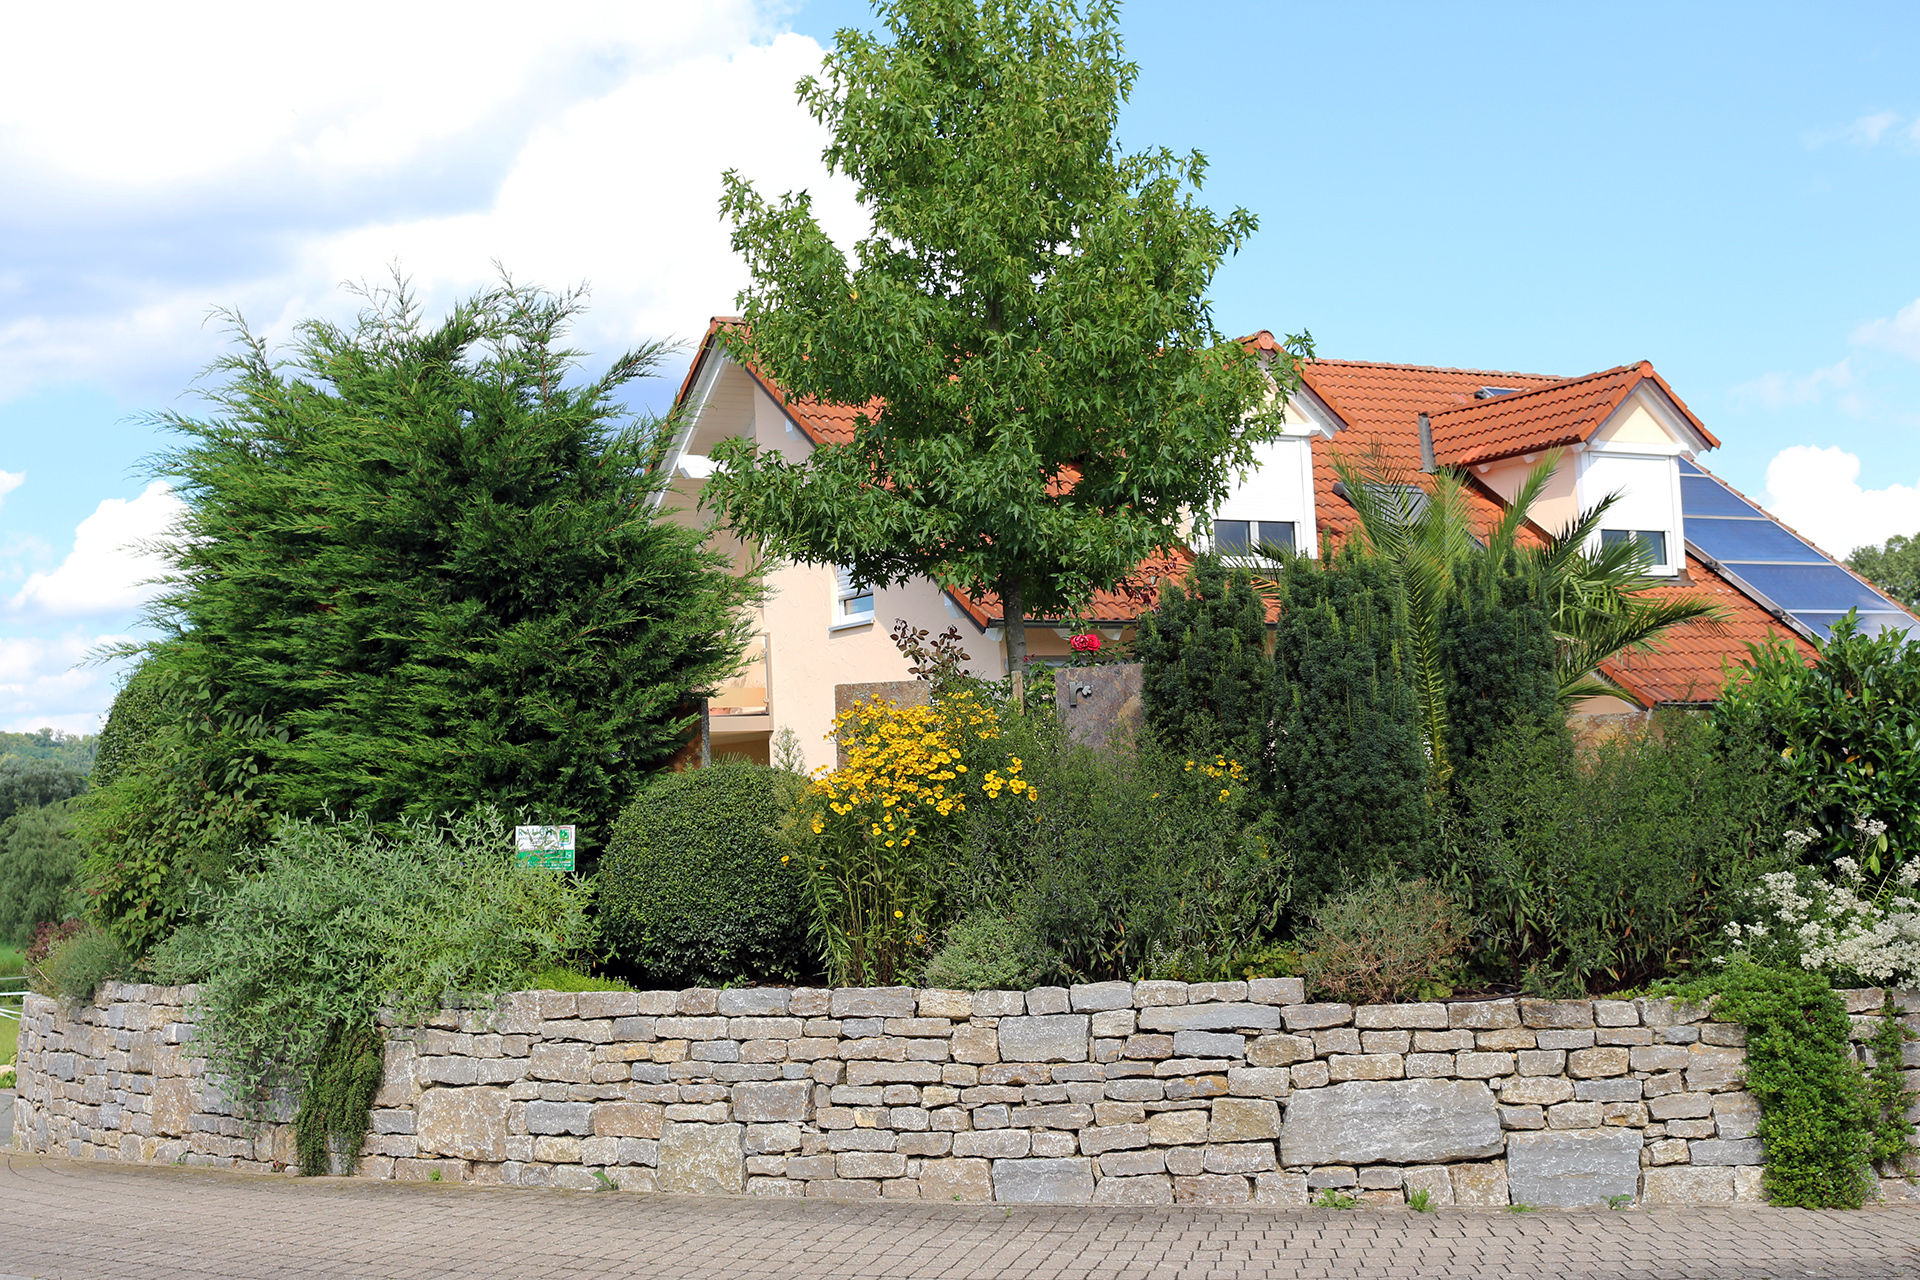 Gartenanlage mit Koiteich in Bamberg-Stegaurach